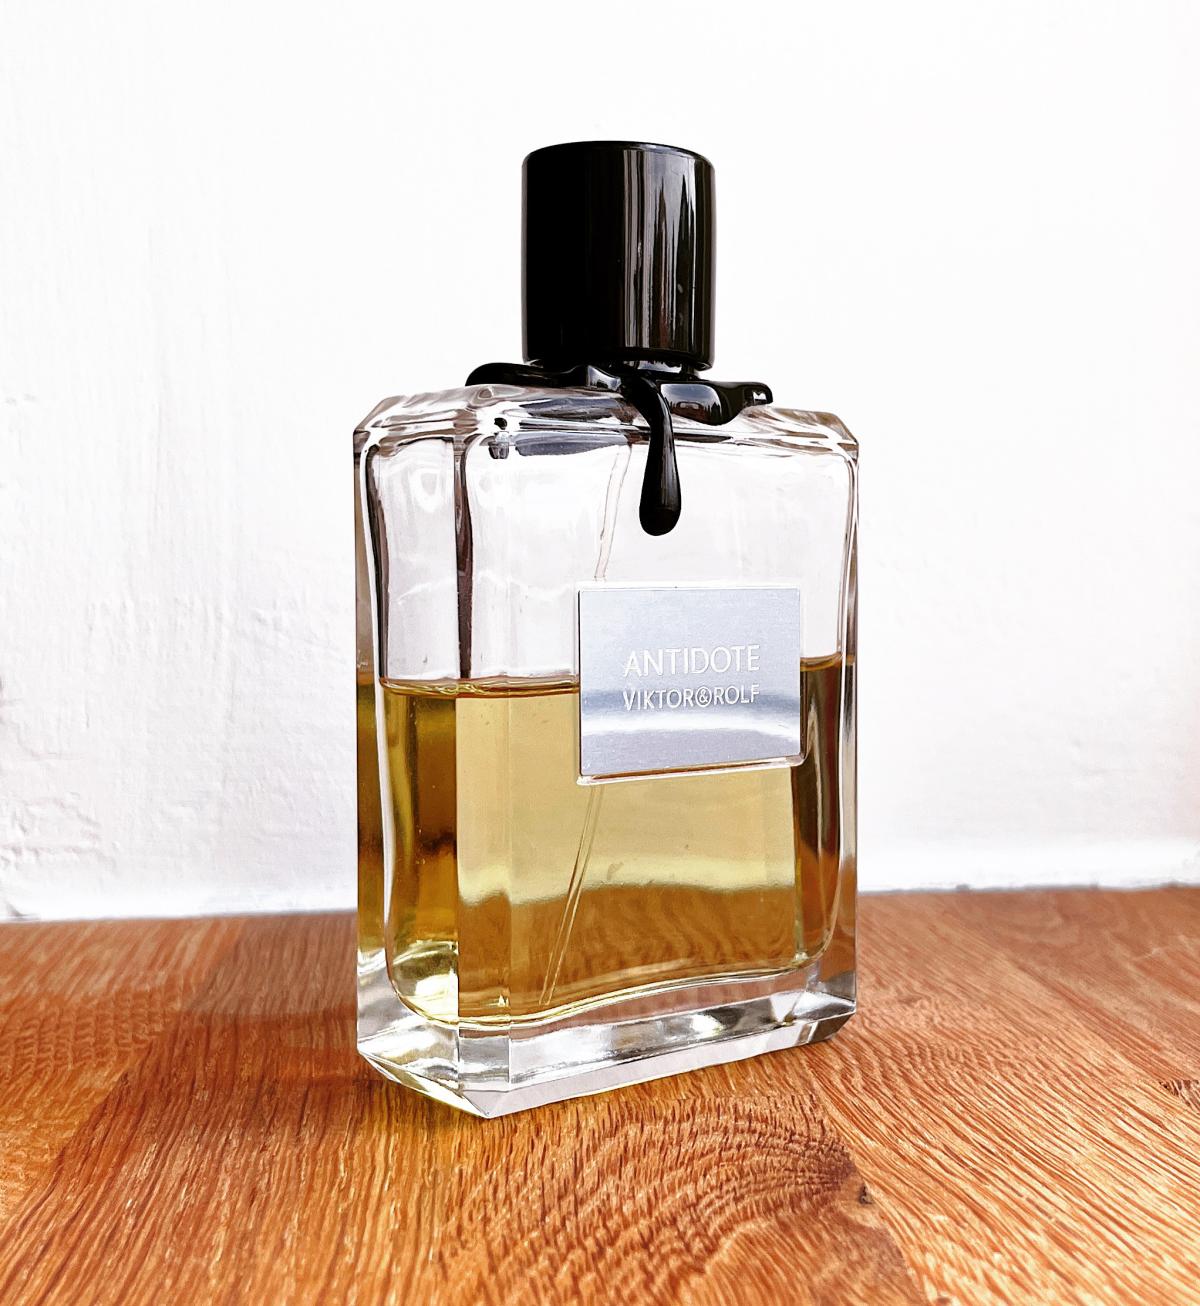 Antidote Viktor&Rolf cologne - a fragrance for men 2006